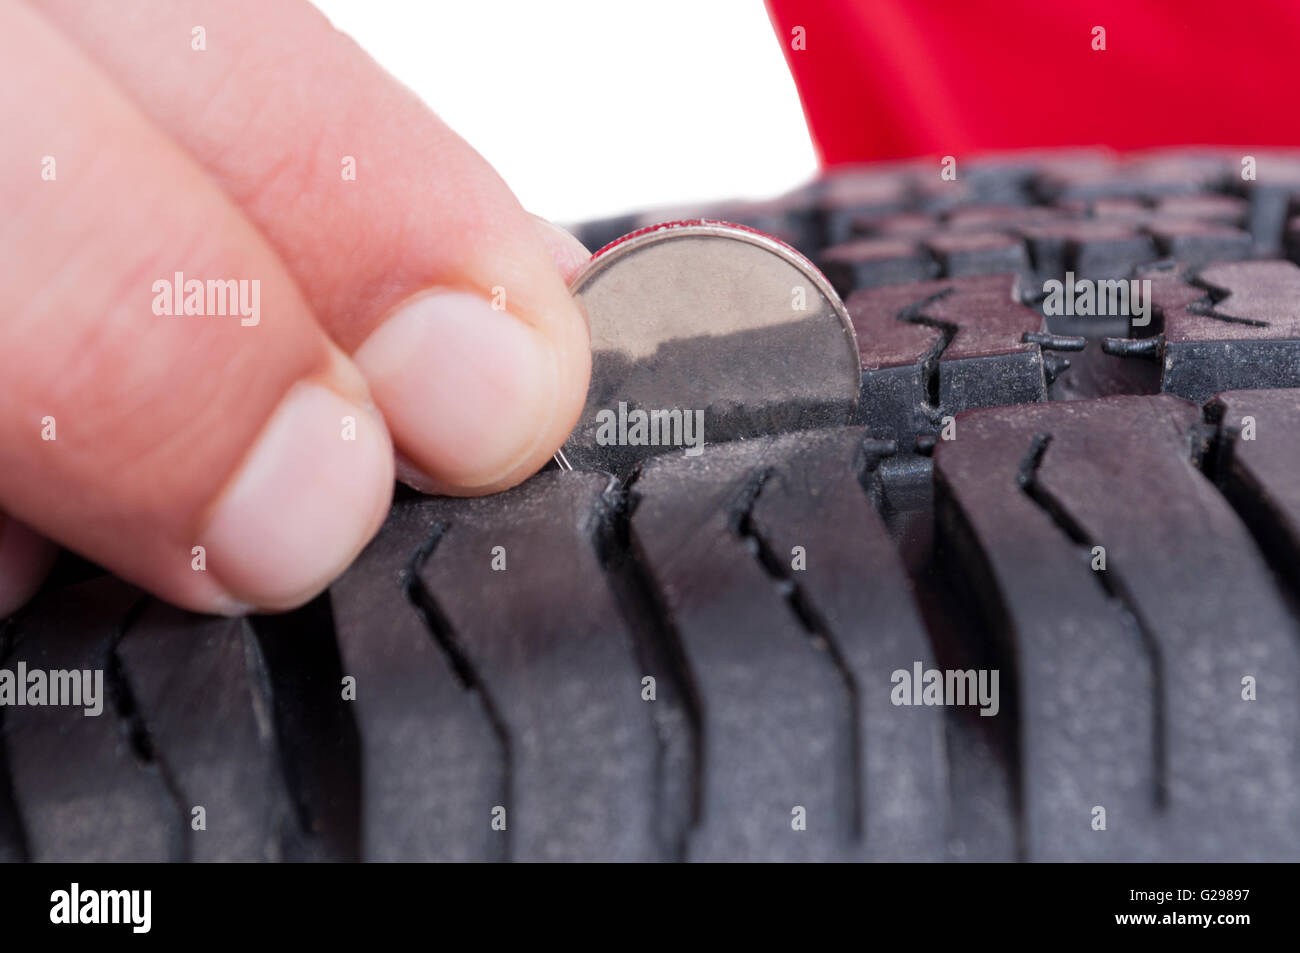 Auto-Rad-Reifen-Tiefe erkundigen Sie sich bei Münze Konzept Stockfotografie  - Alamy